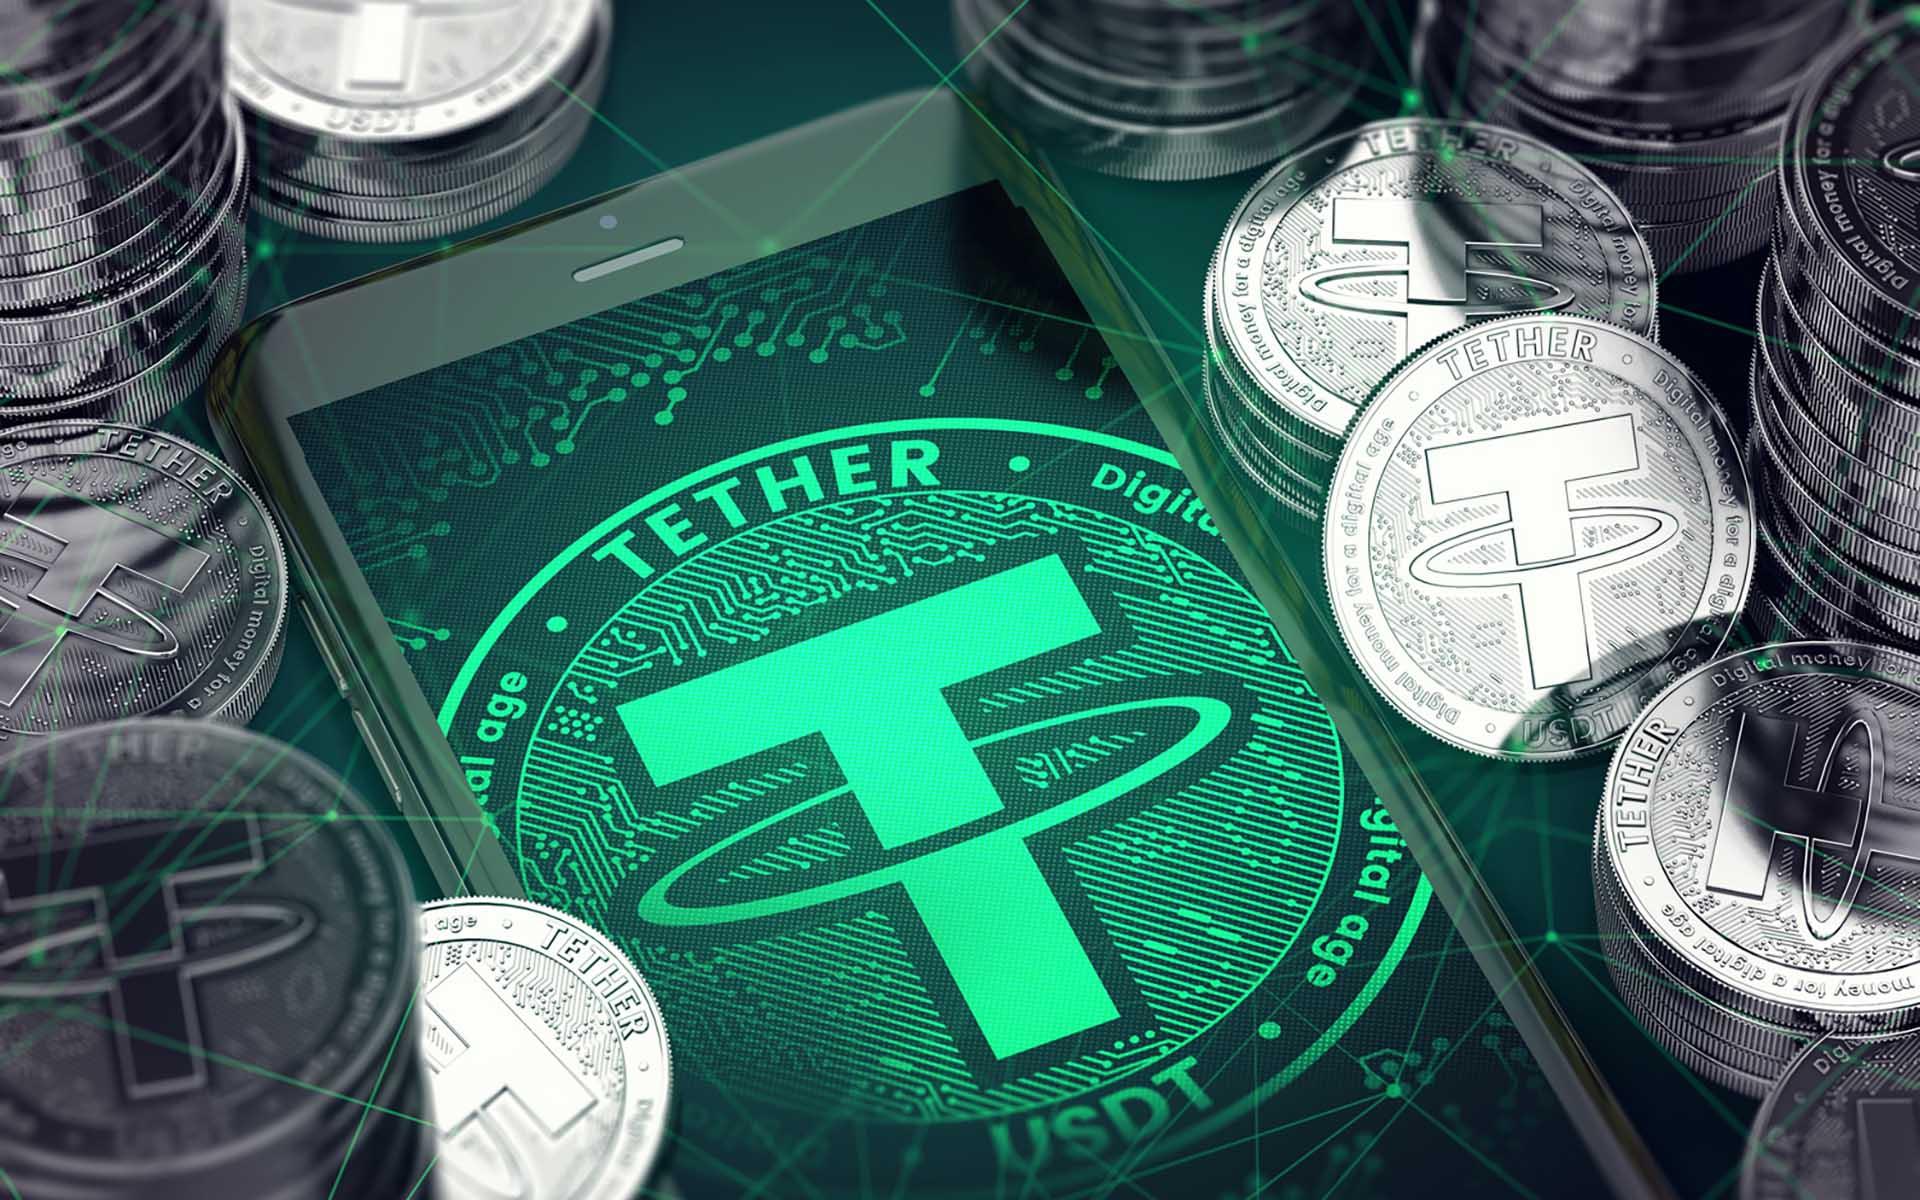 Tether, kripto para birimleri dünyasındaki istikrarlı coin (stablecoin) olarak bilinir. Tether, bir dizi farklı para biriminde ve kripto para biriminde ticaret yapmak isteyenler için bir araçtır. Tether, fiyat istikrarı sağlamak için sabit bir değere sahiptir ve bu değer genellikle 1 ABD Doları'na sabitlenir. Tether'in kısaltması USDT'dir.